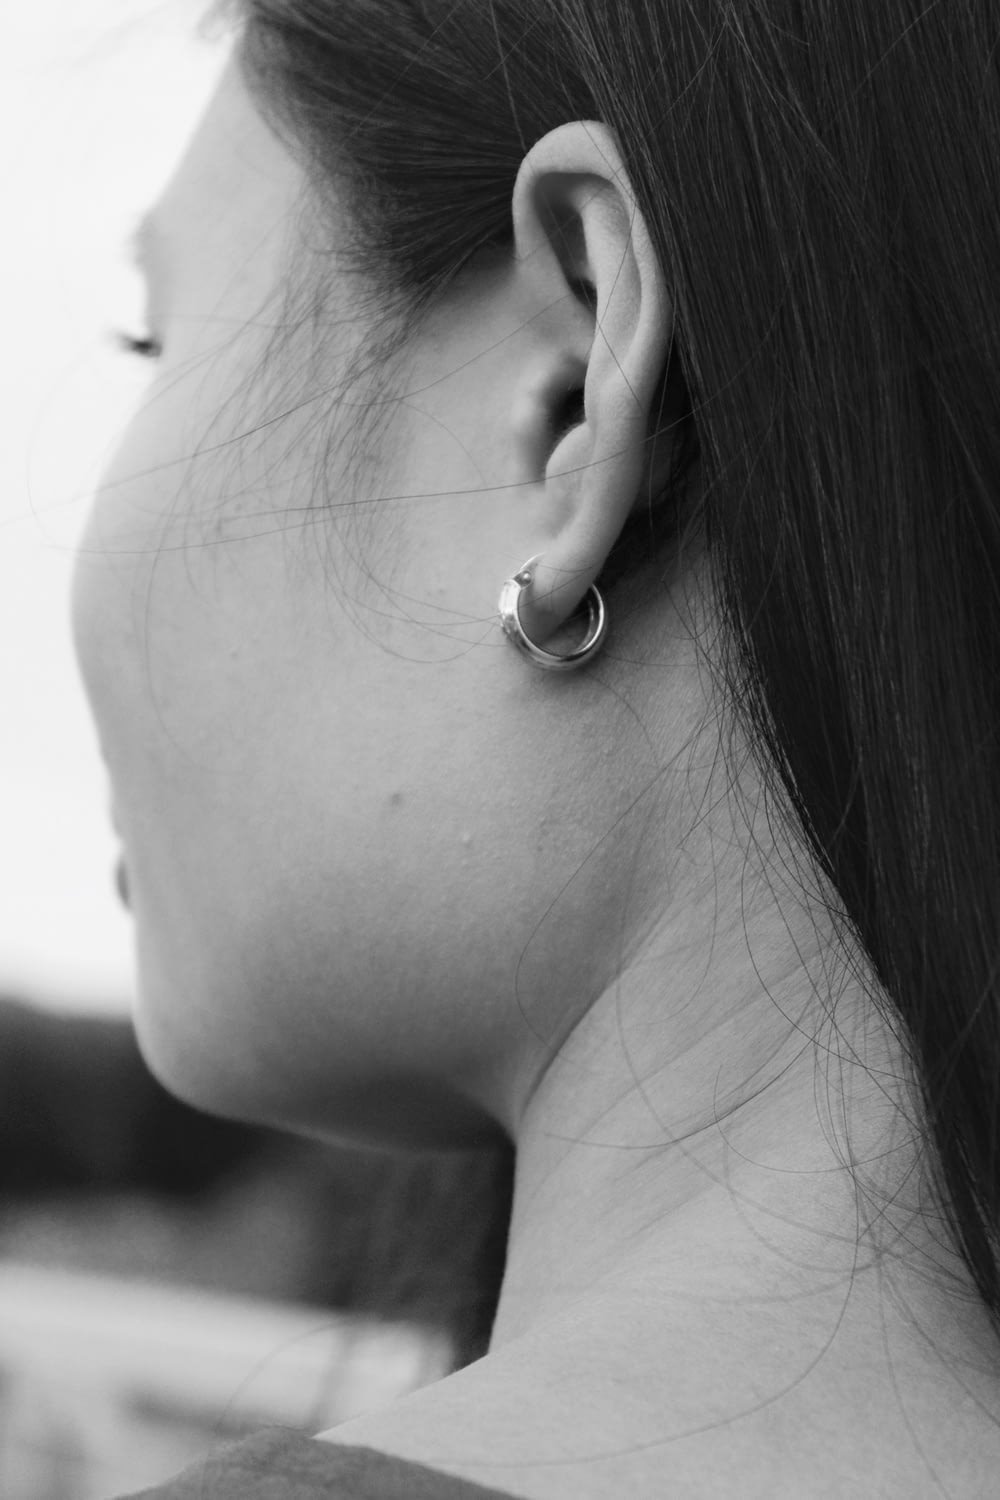 Photographie en niveaux de gris d’une femme portant une boucle d’oreille créole